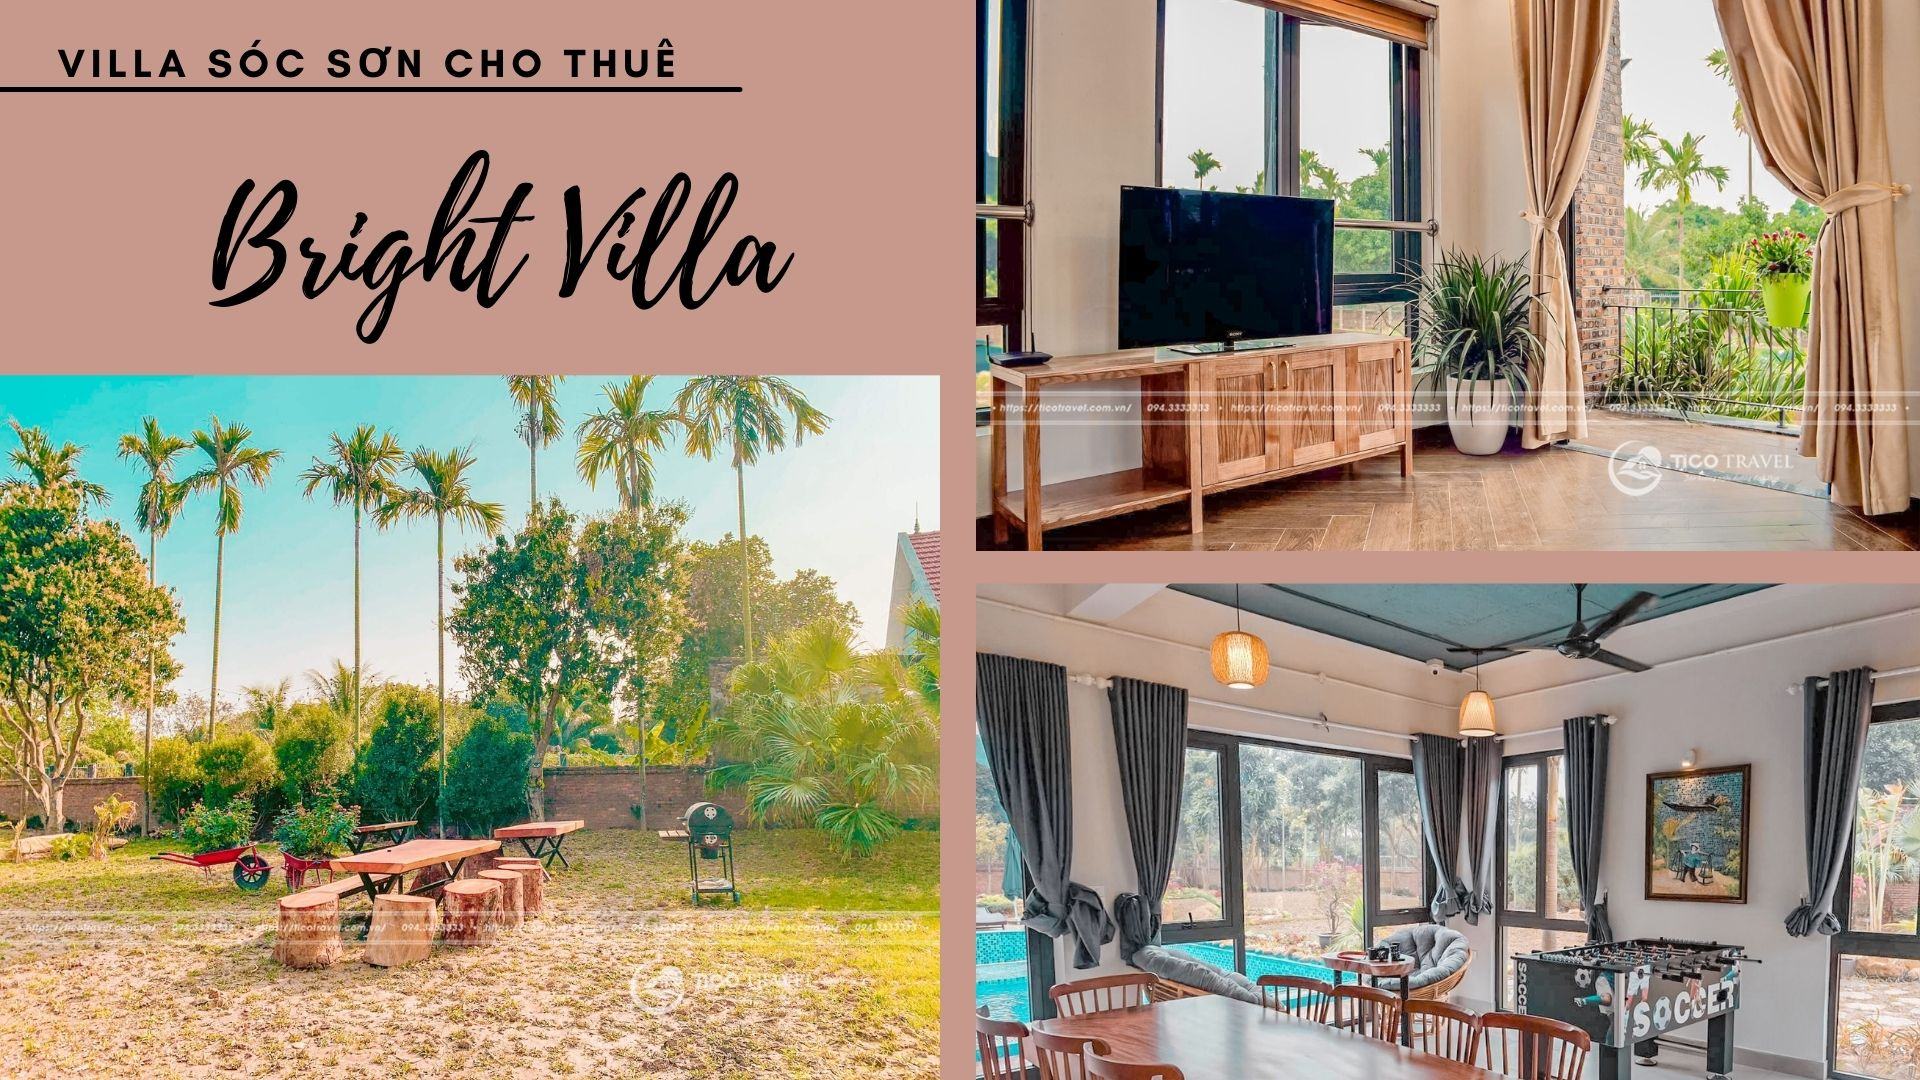 Bright Villa - Villa Sóc Sơn cho thuê